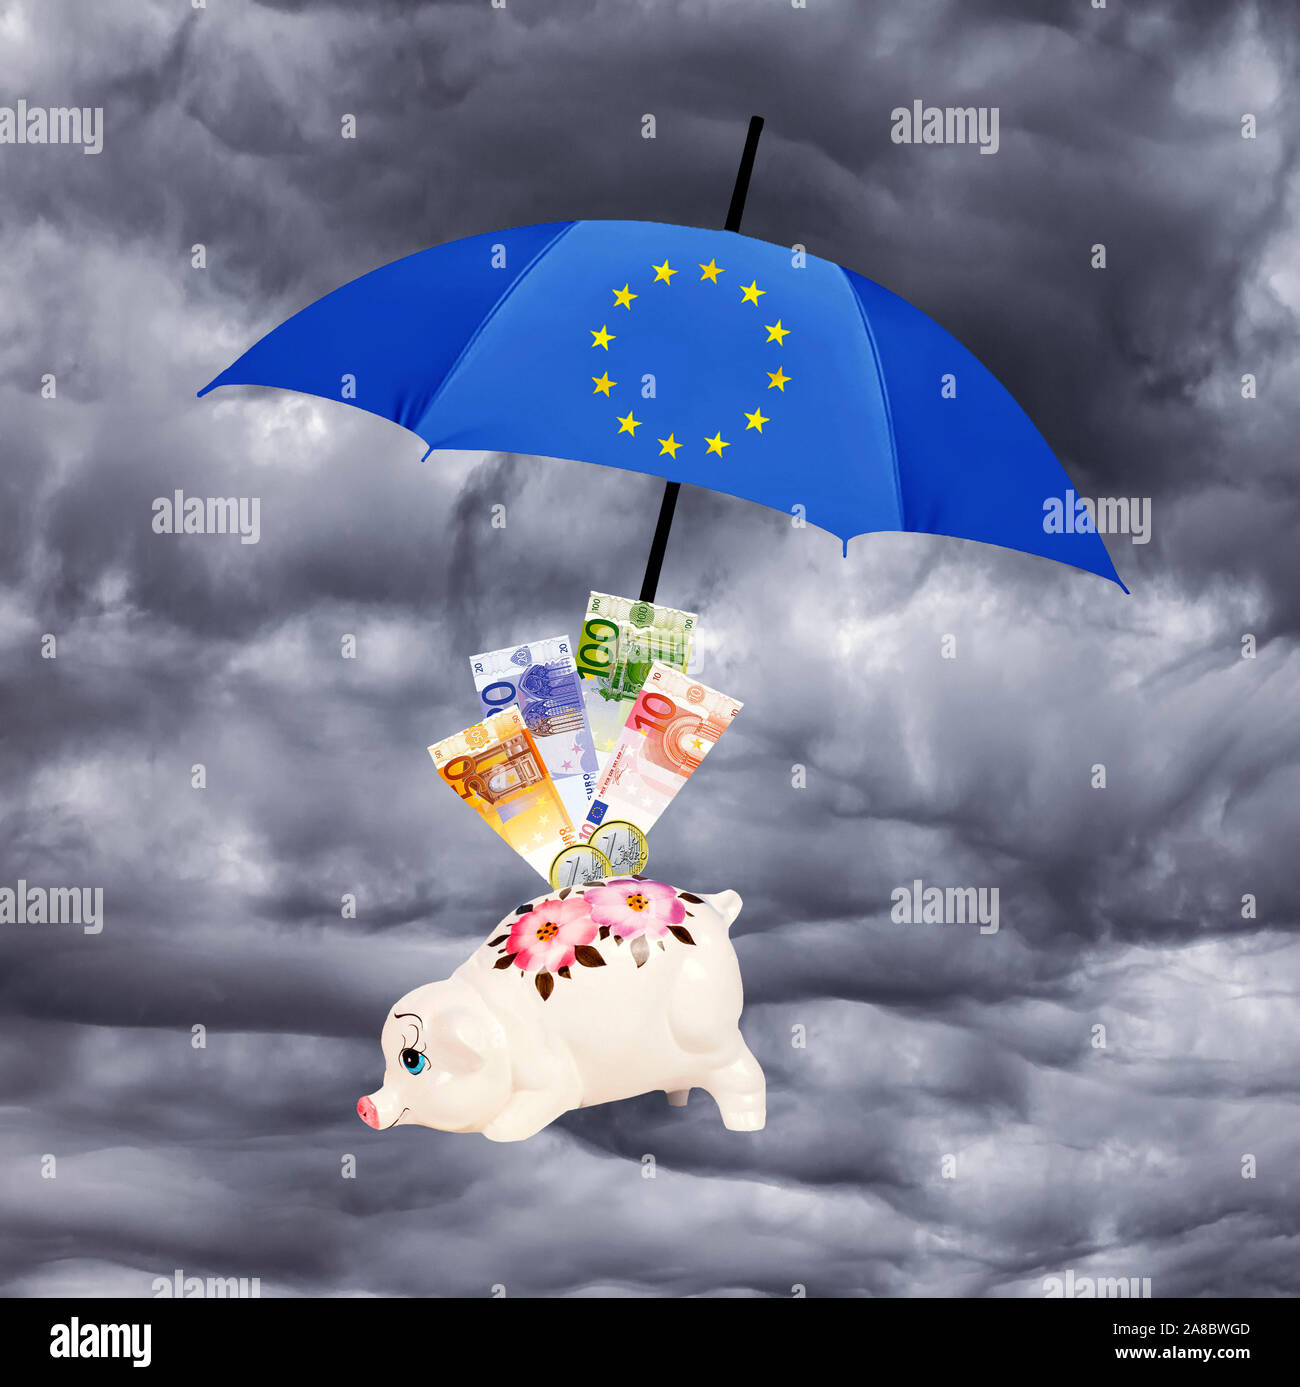 Euro-Rettungsschirm, dient dem Schutz der Waehrung vor Krisen, Gewitter, Regenwolken, Schutz dr Spareinlagen, Sparschwein, Euro-Banknoten, Stock Photo